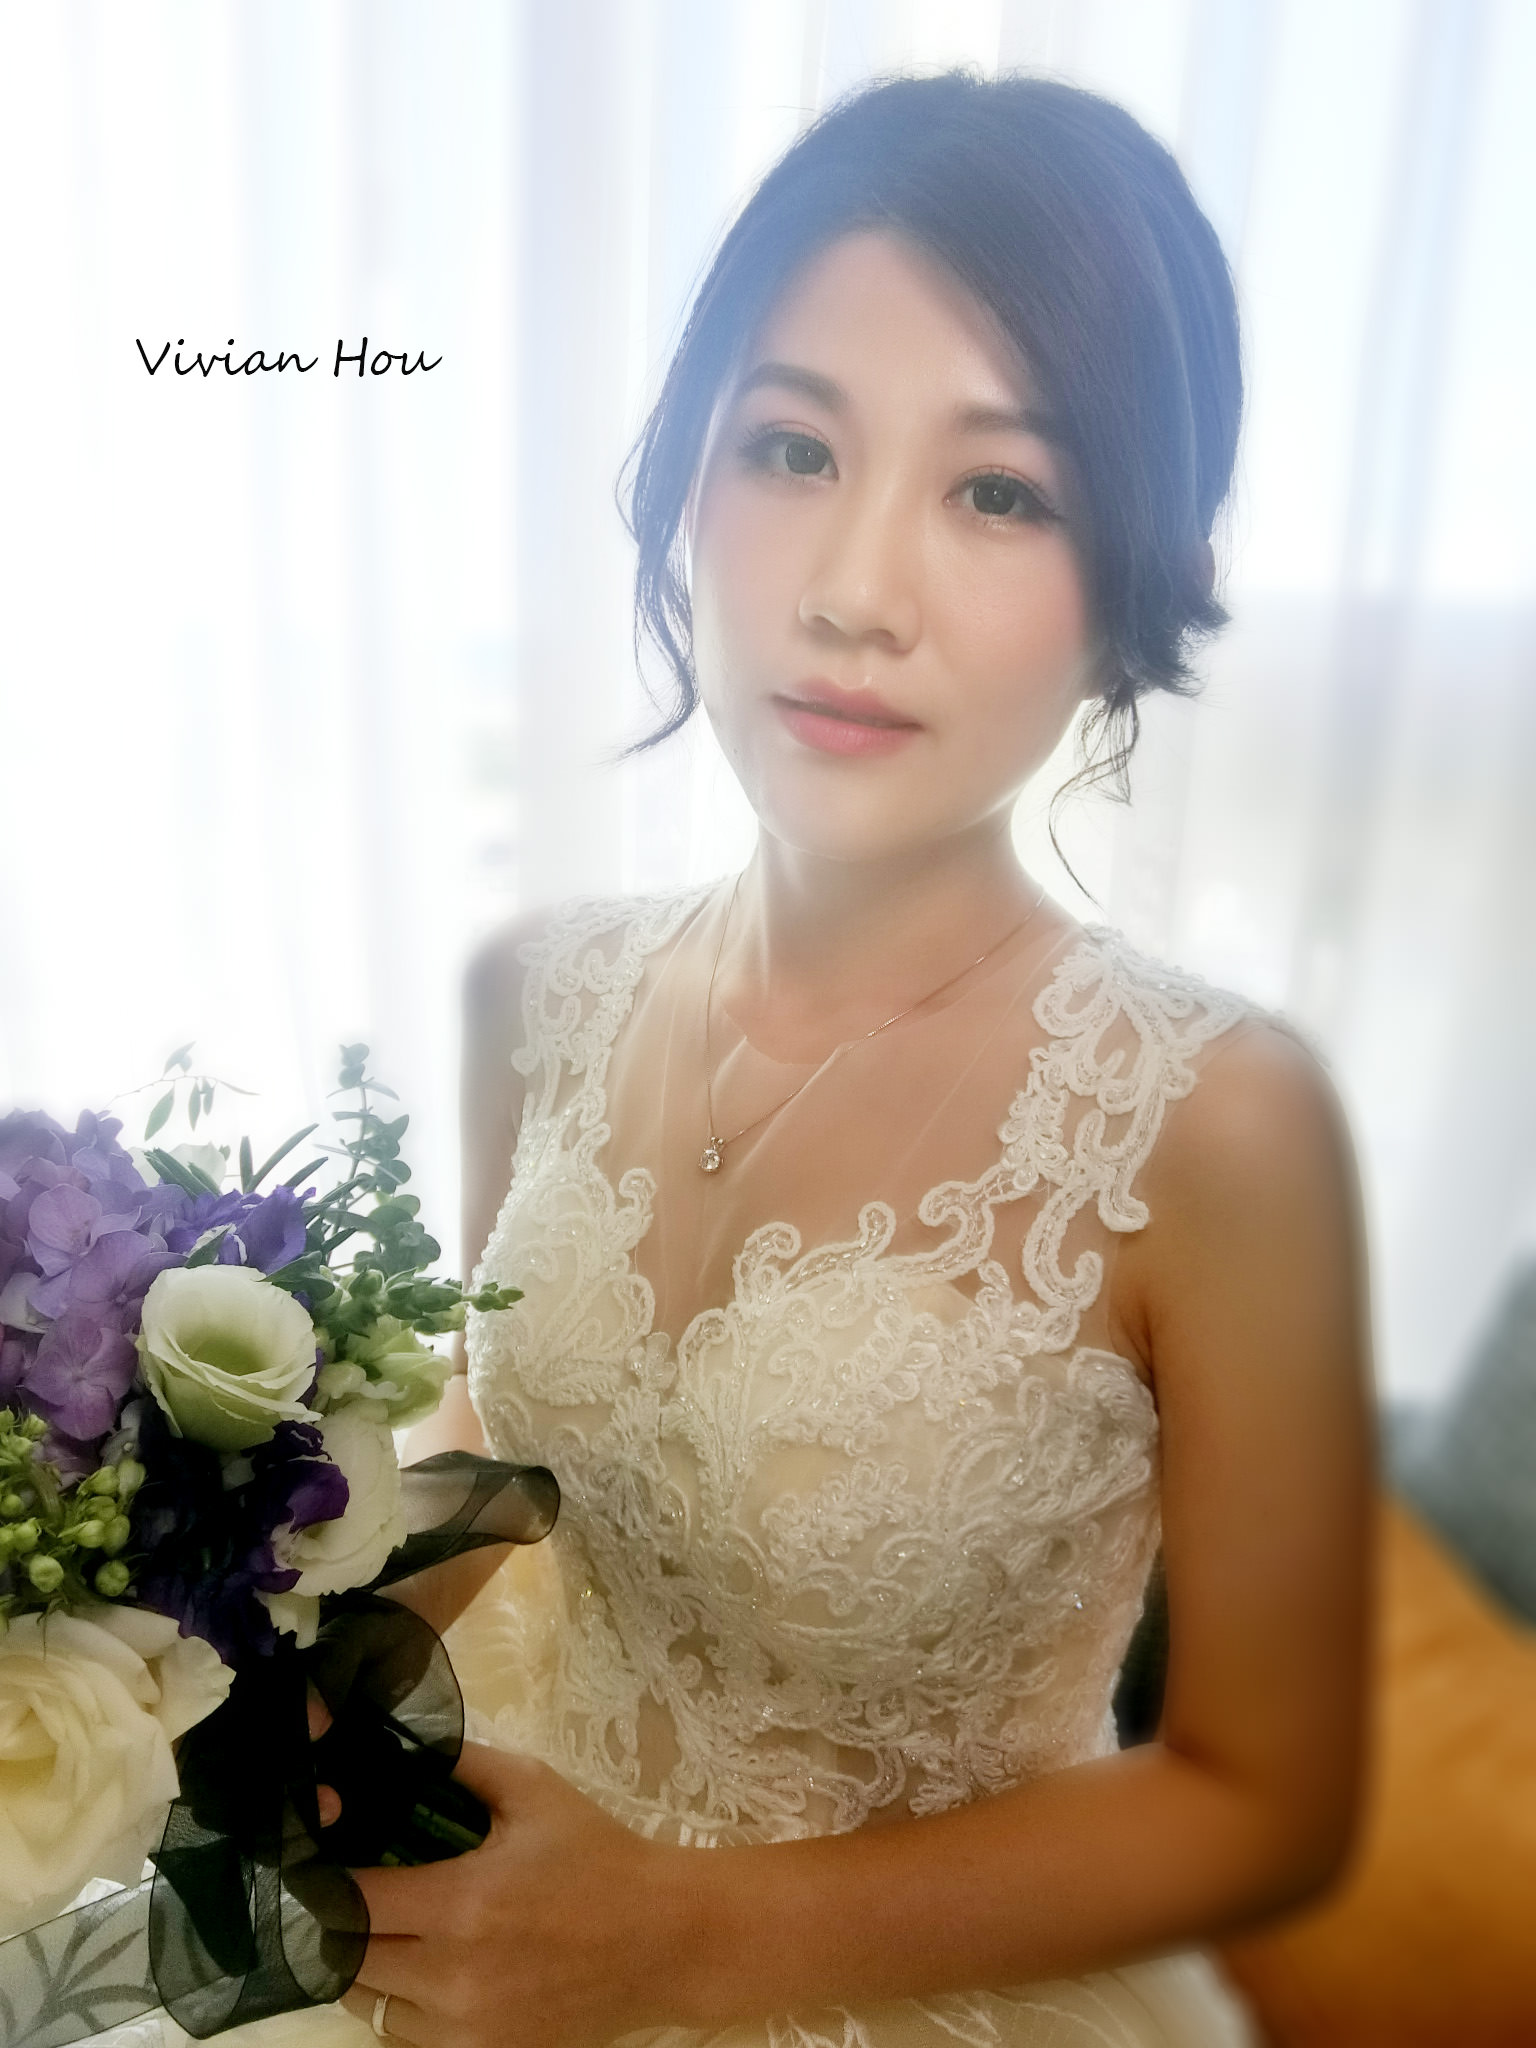 典雅、女人味、氣質的白紗婚宴造型 台北新秘